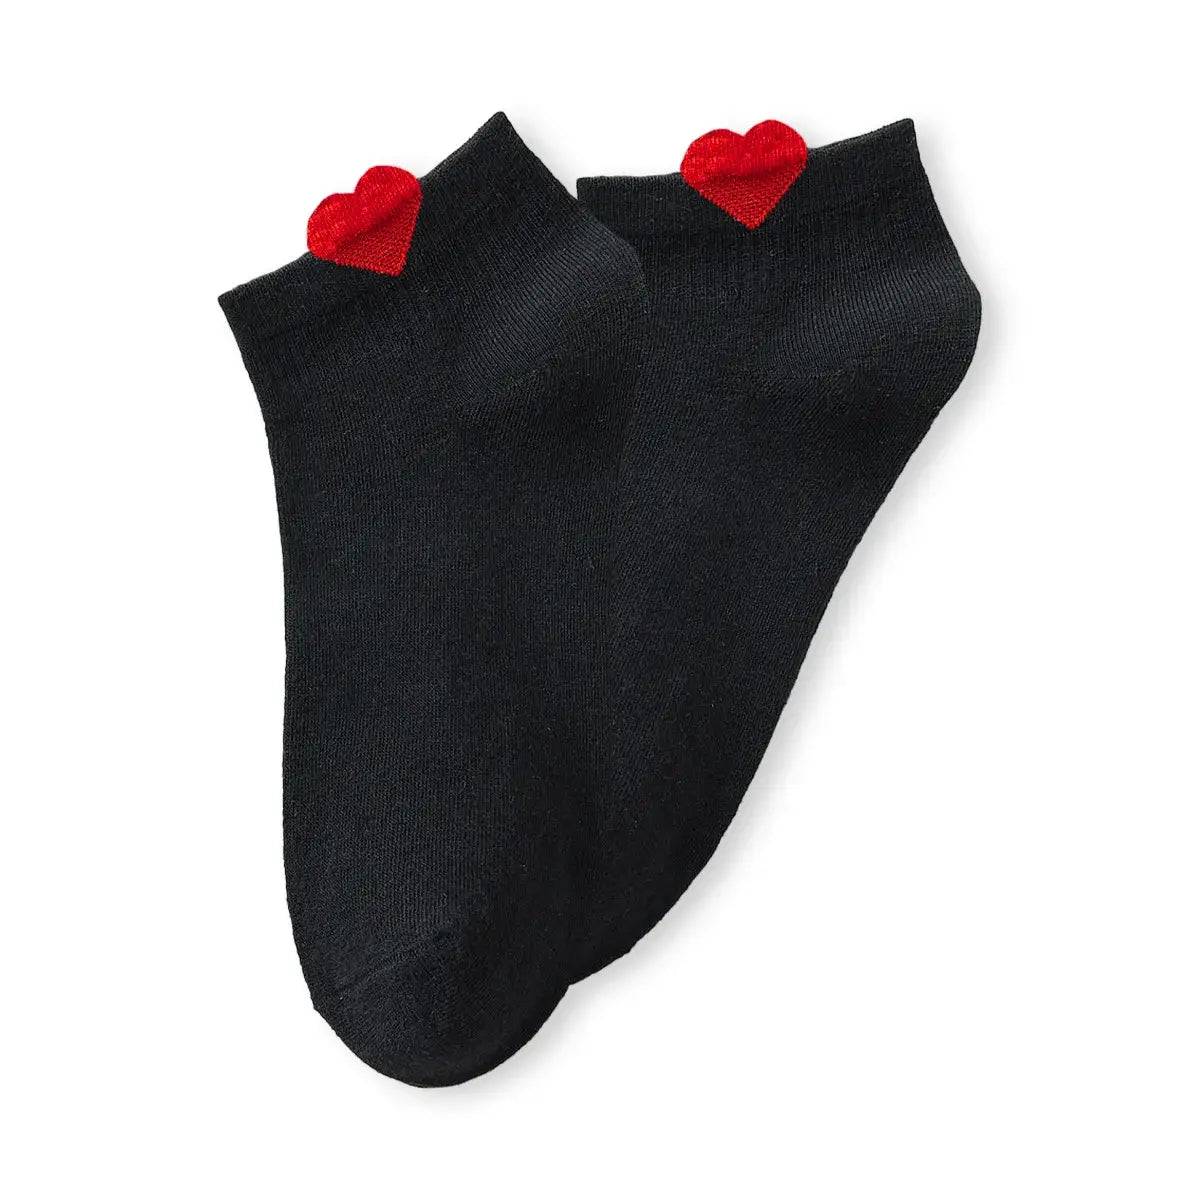 Chaussettes noire en coton à motif cœur pour femmes | Chaussettes douces et confortables | Fabriquées à partir de matériaux de haute qualité | Un cadeau parfait pour les femmes de tous âges | Disponibles en différentes couleurs